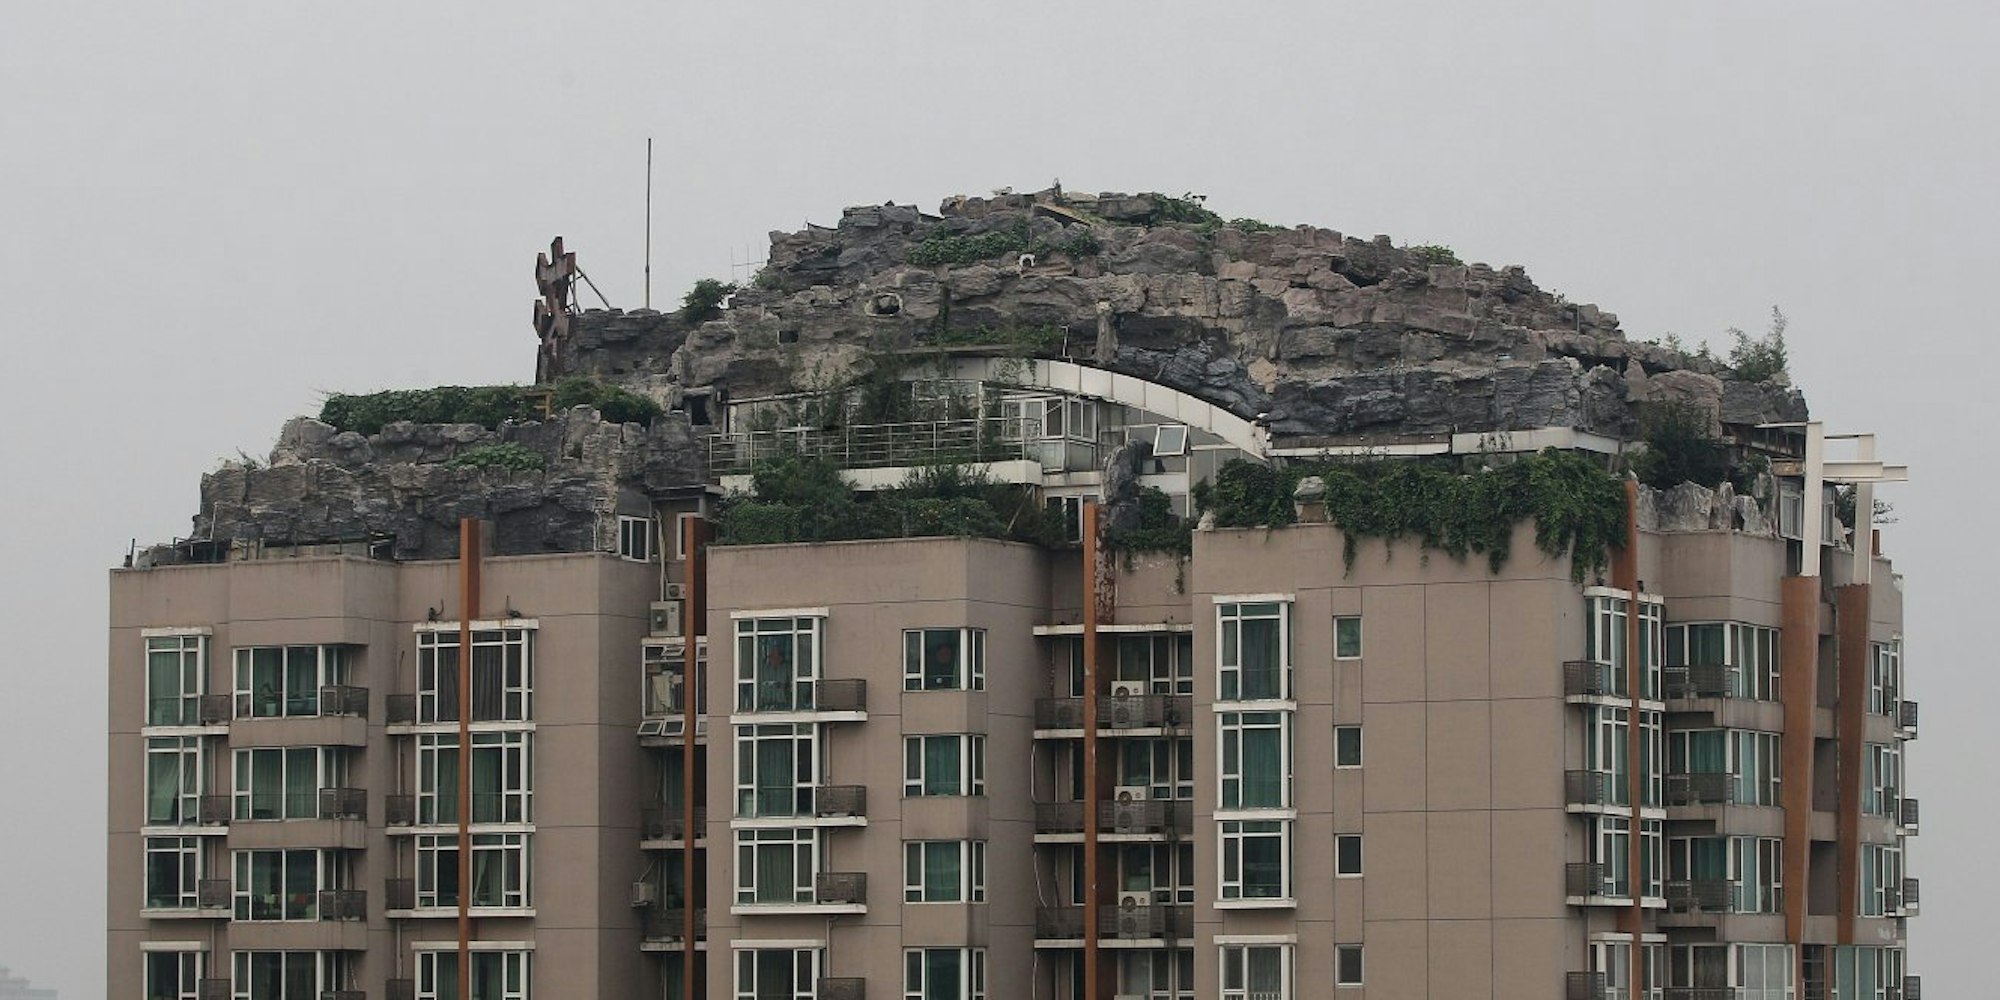 Diese Felsenvilla auf einem Hochhaus in Peking muss abgerissen werden.